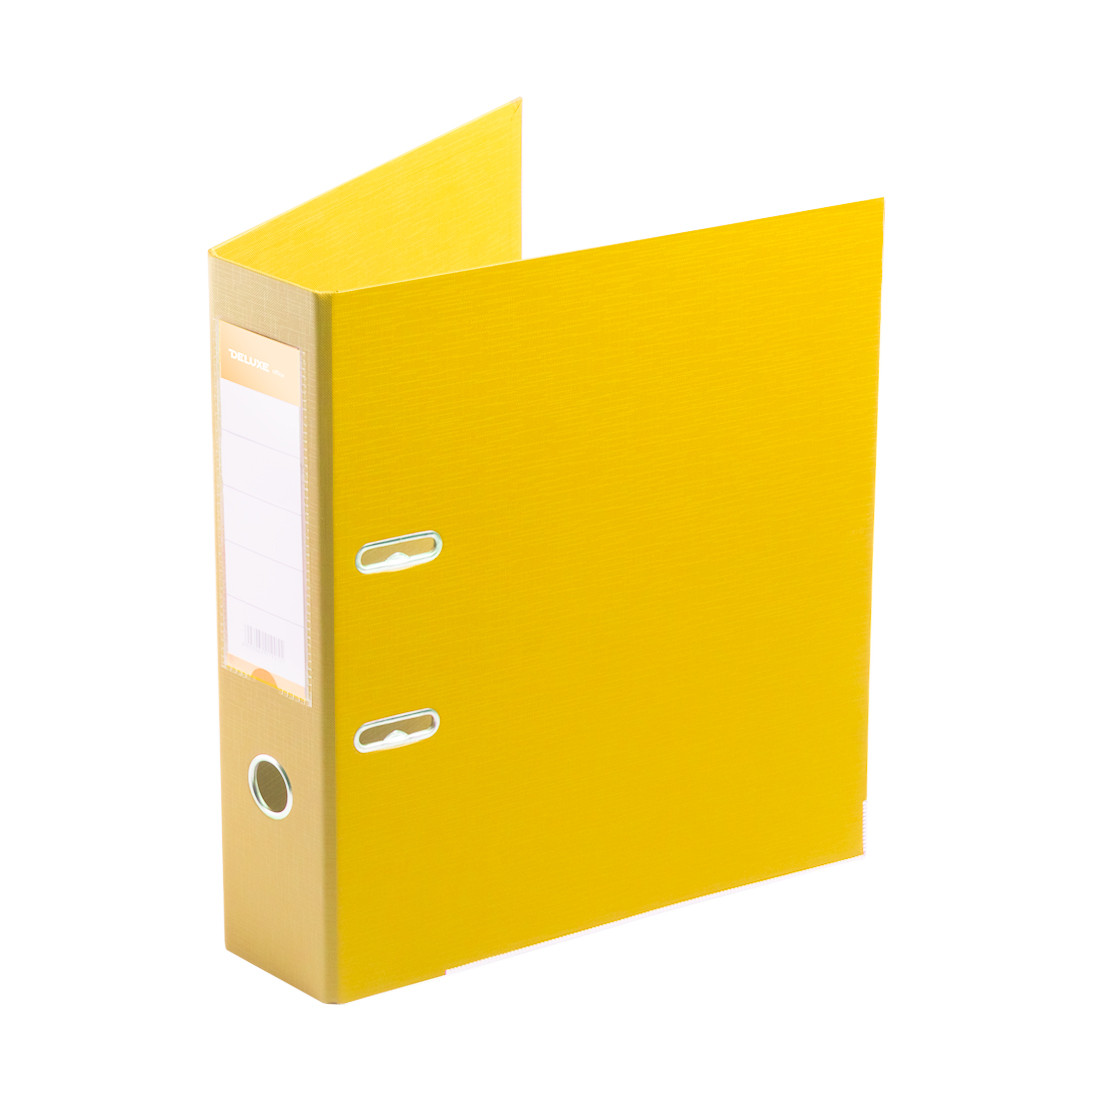 Папка-регистратор Deluxe с арочным механизмом  Office 3-YW5 (3" YELLOW)  А4  70 мм  желтый 3-YW5 (3" YELLOW)